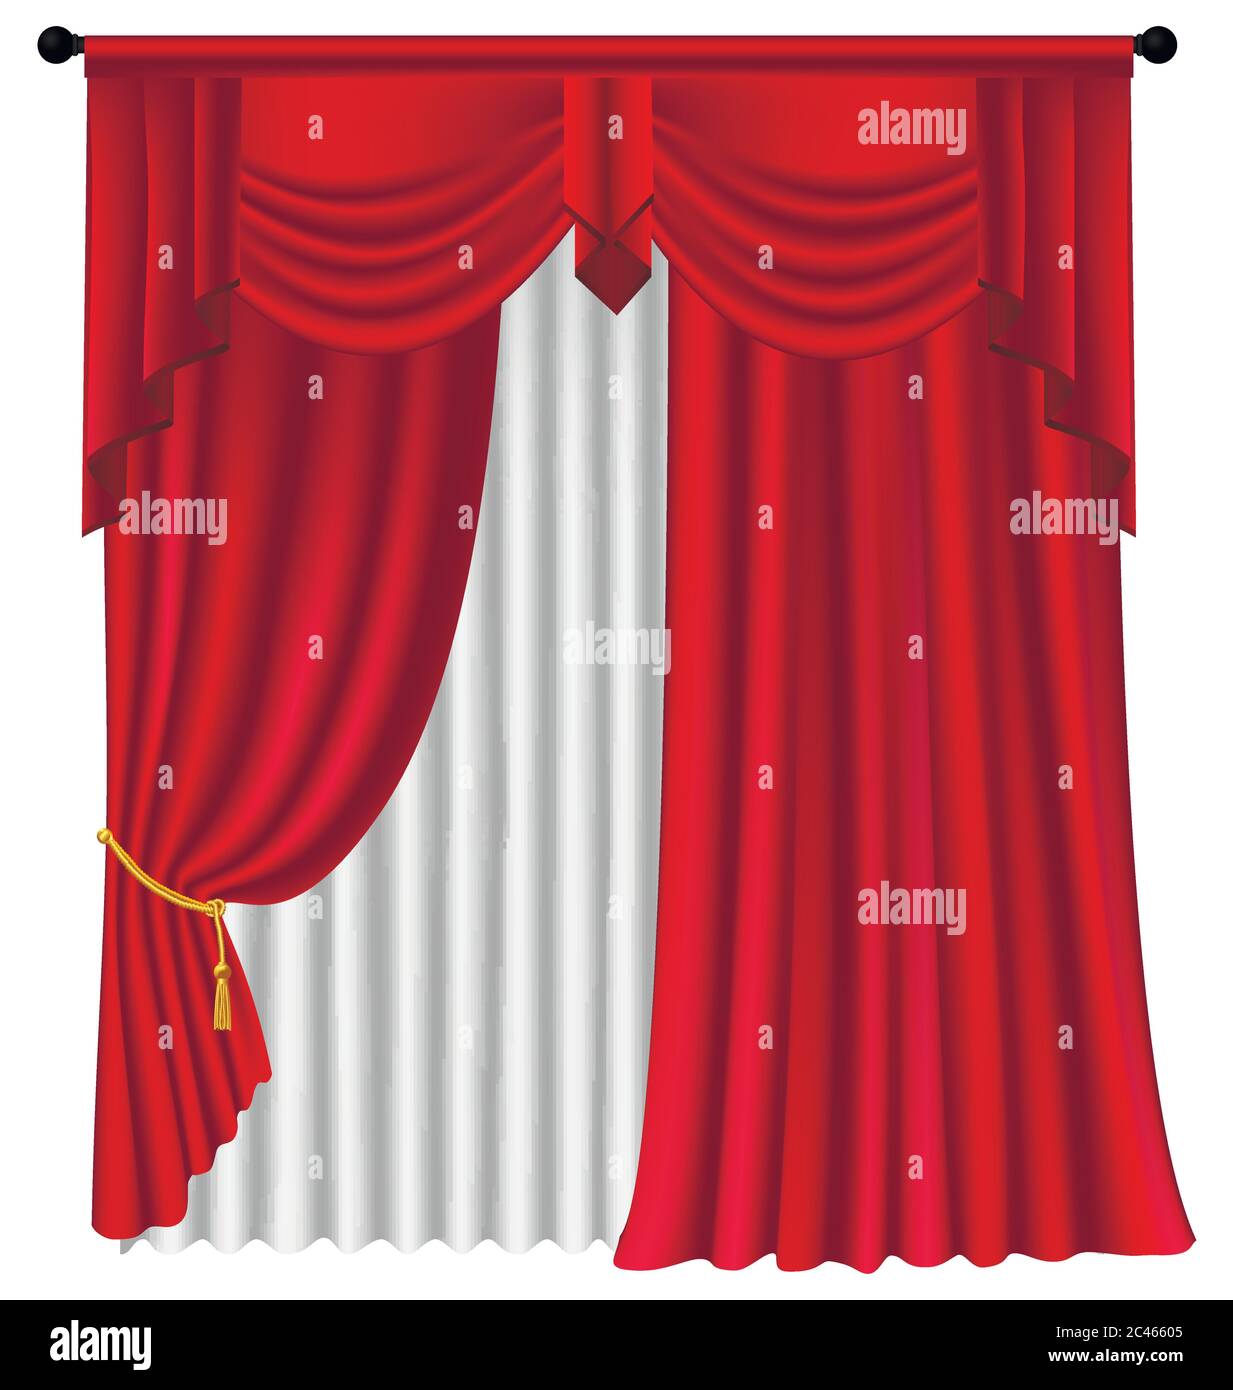 Rote Luxus Gardinen und Vorhänge auf weißem Hintergrund, realistische Vektor-illustration Stock Vektor